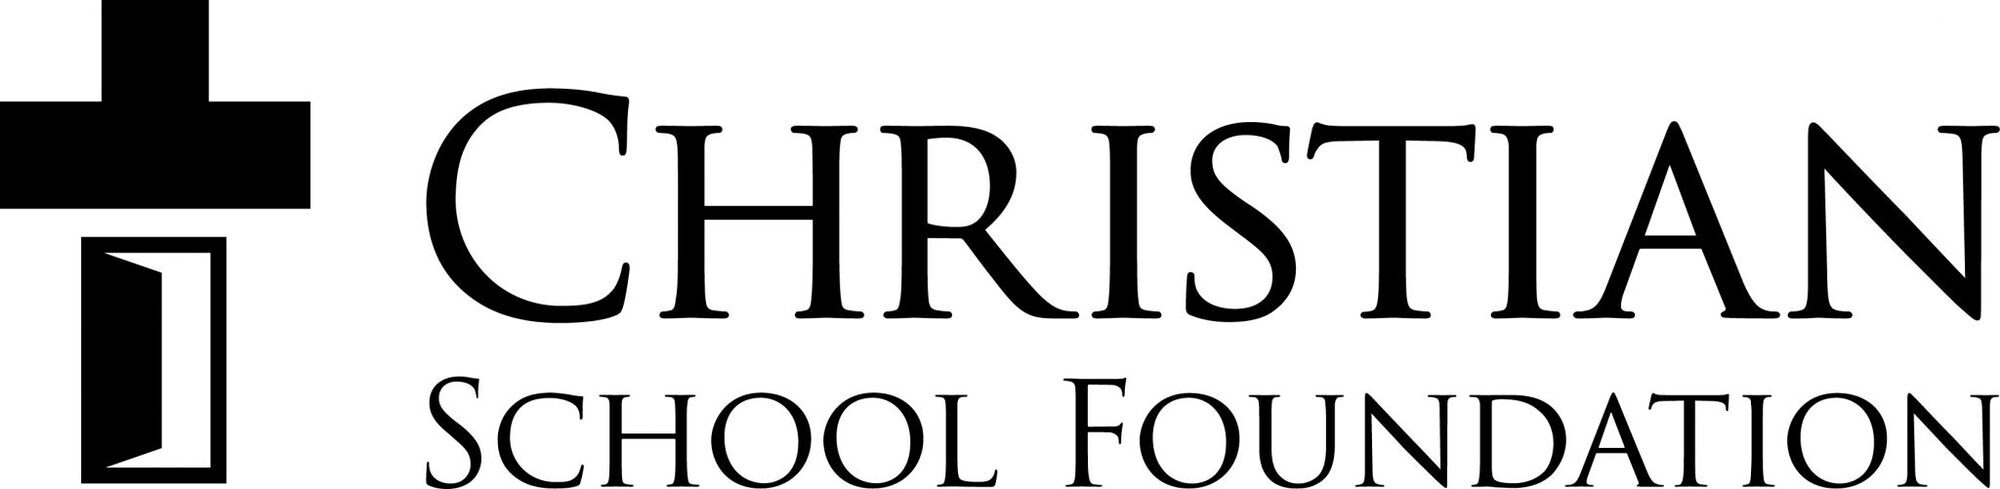 Christian School Foundation logo